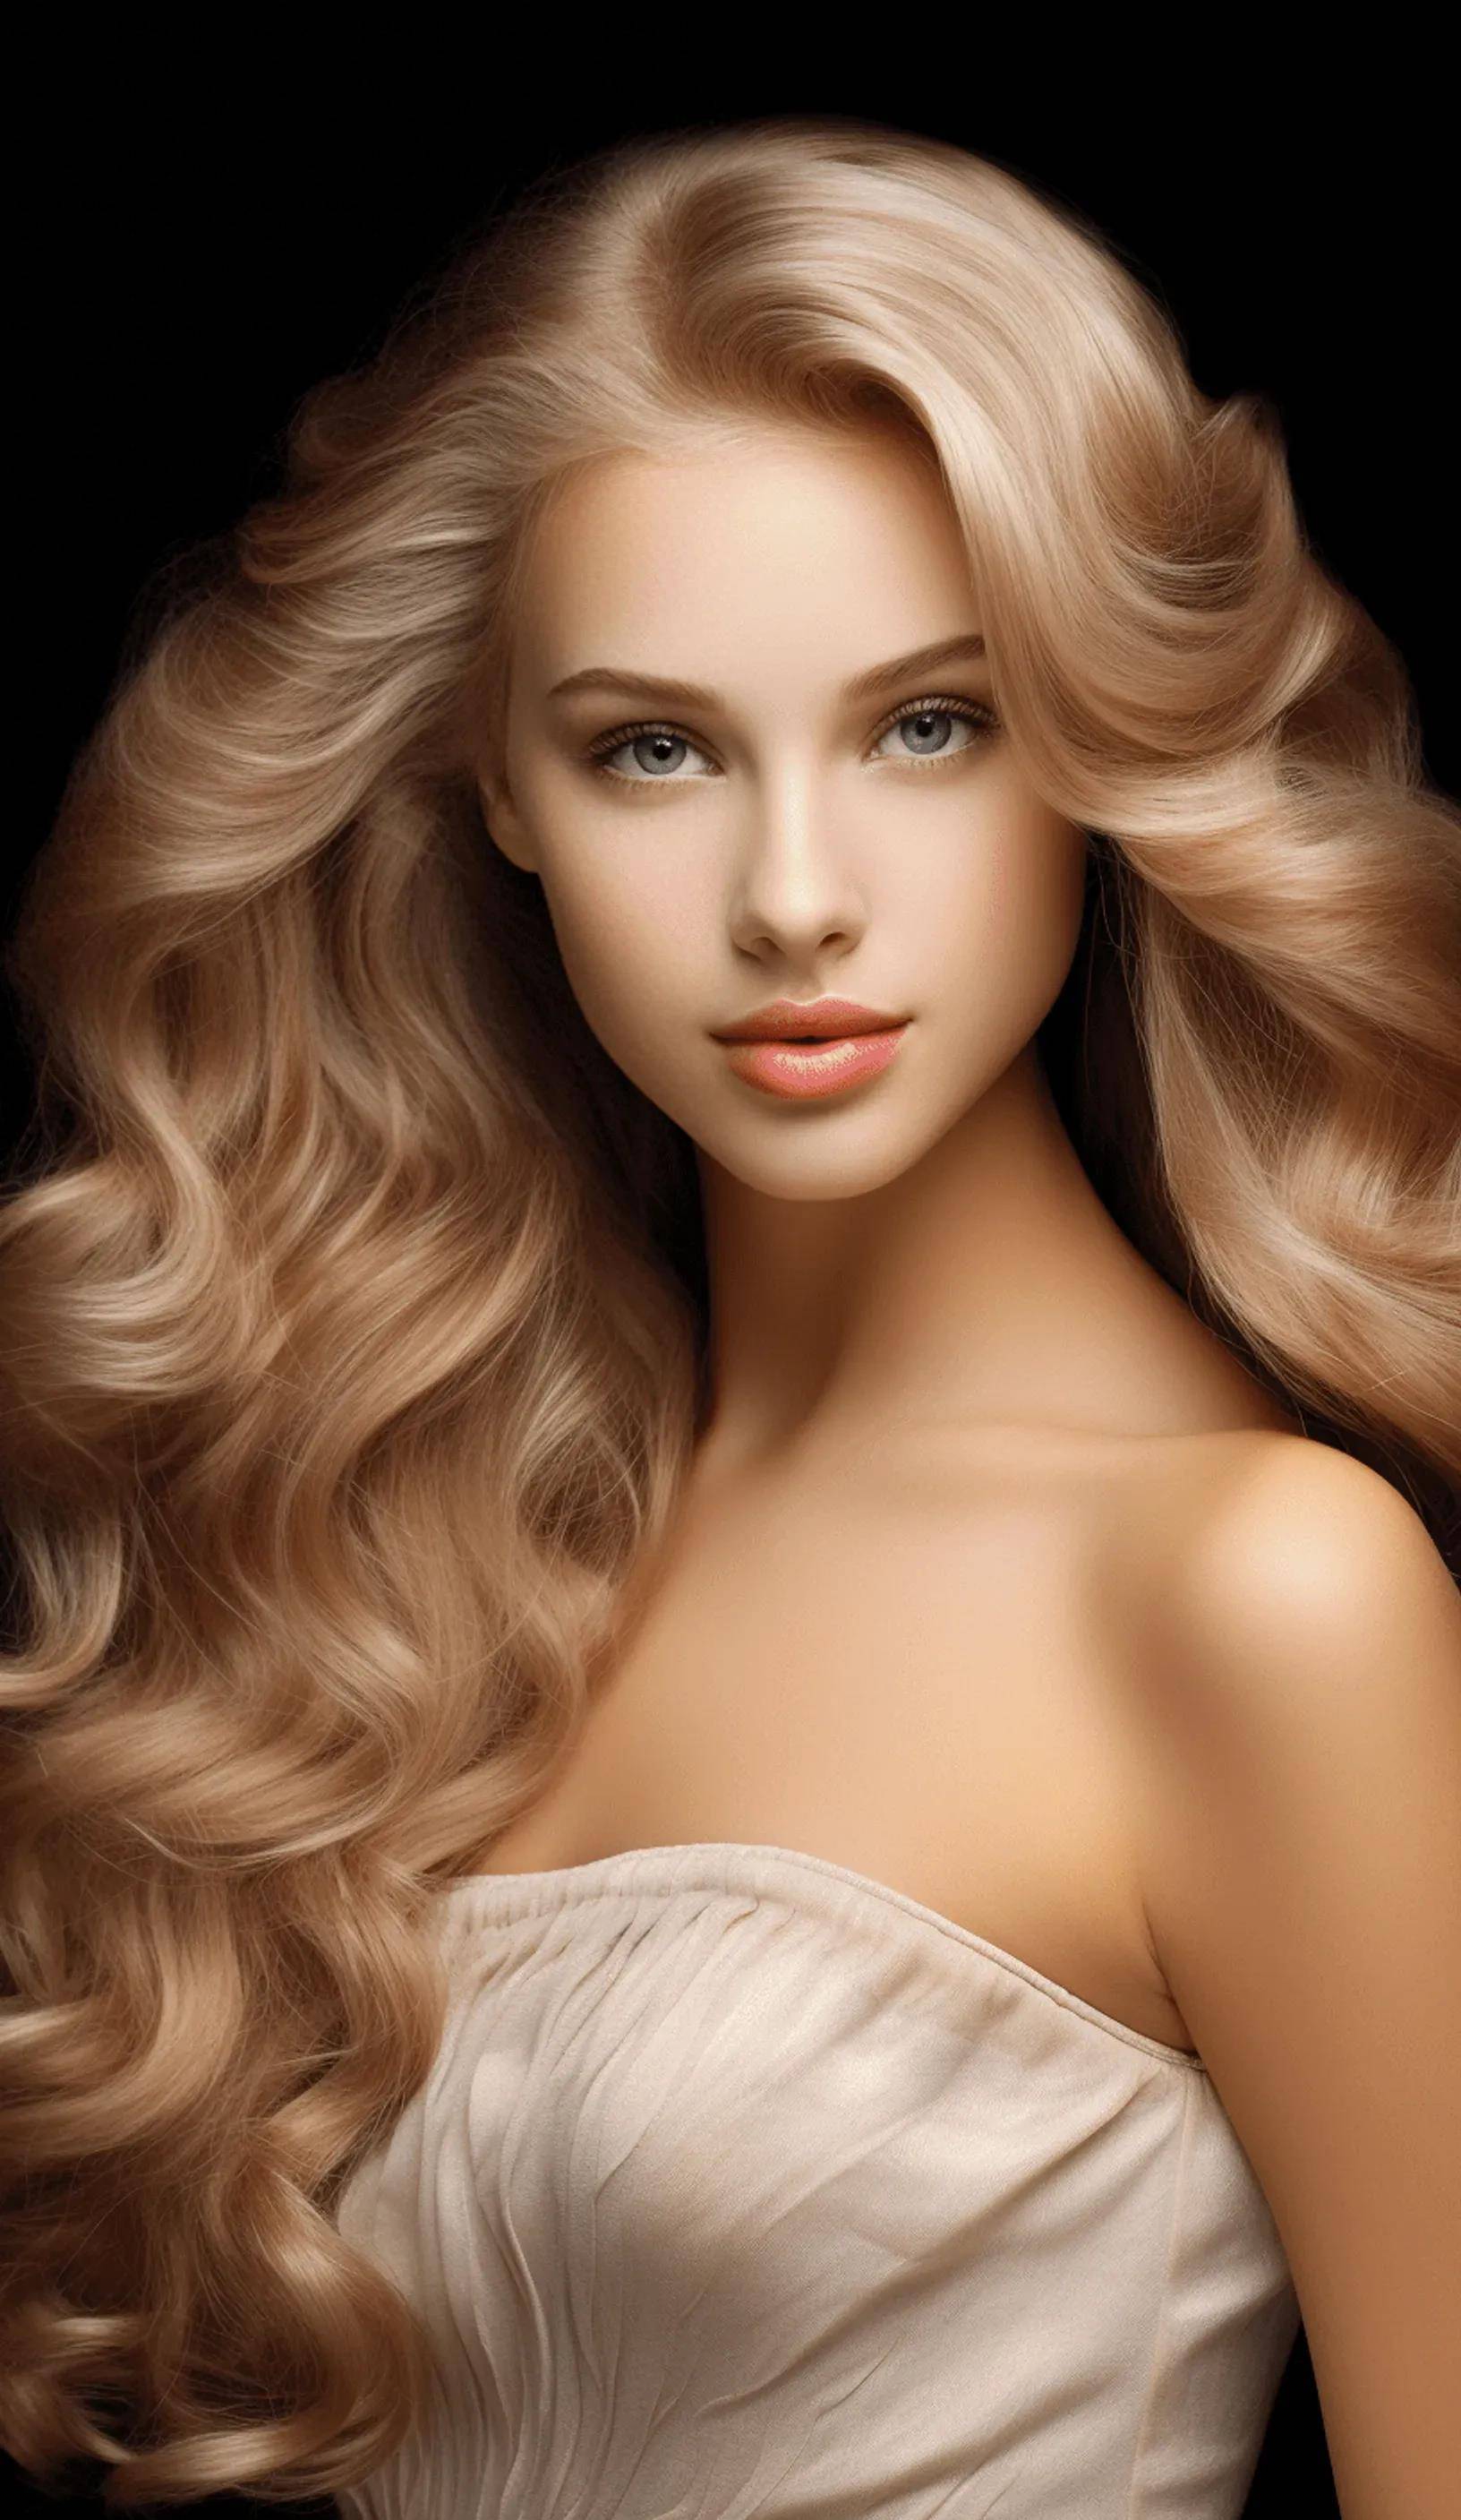 金色天鹅绒头发,金发美女的绝色魅力令人无法抗拒!